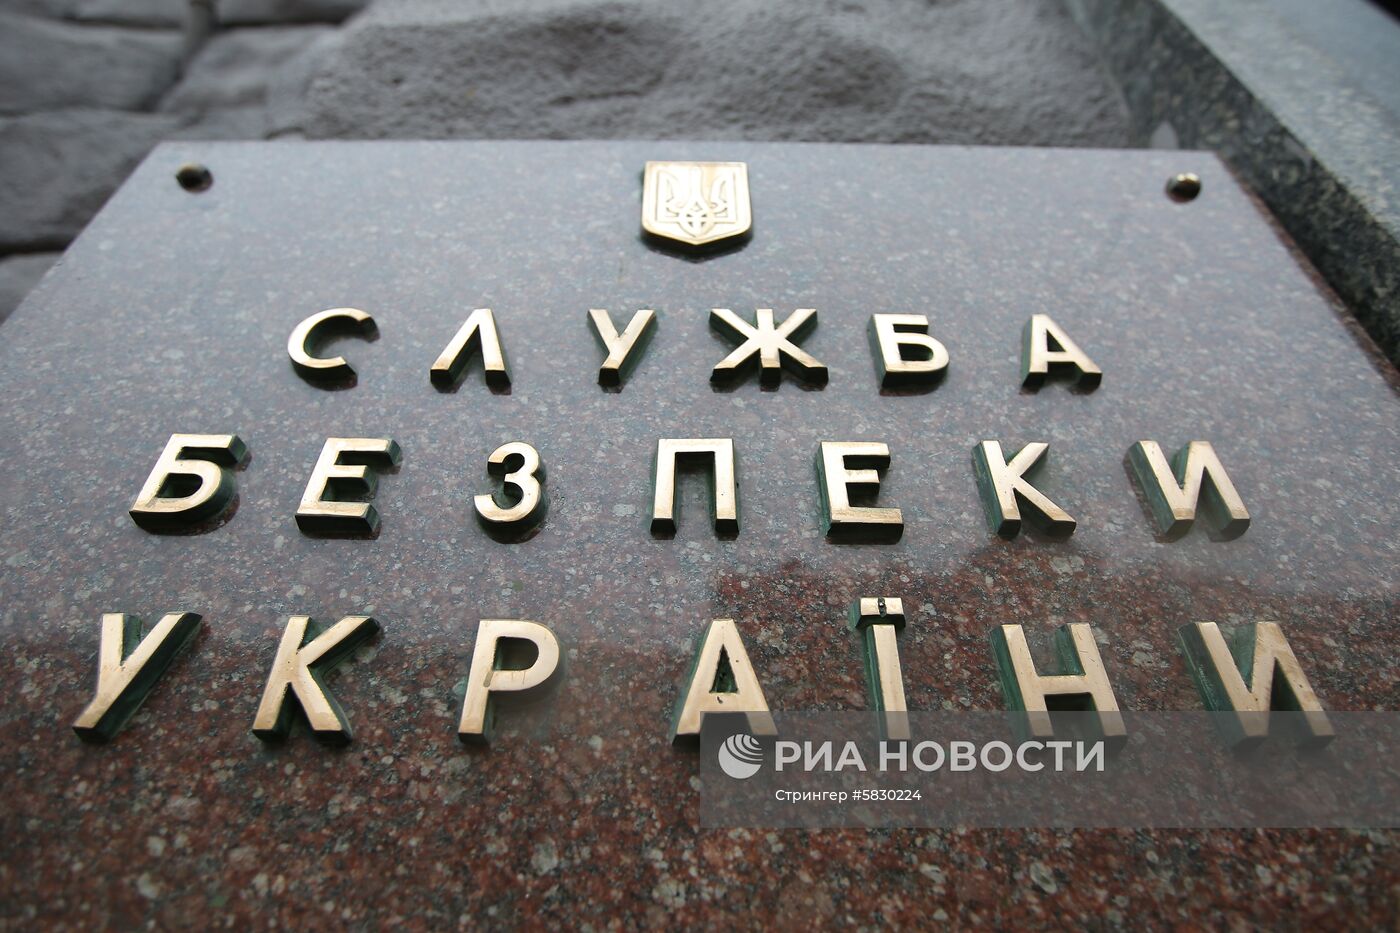 Здание СБУ в Киеве и памятник участникам военных действий в Донбассе